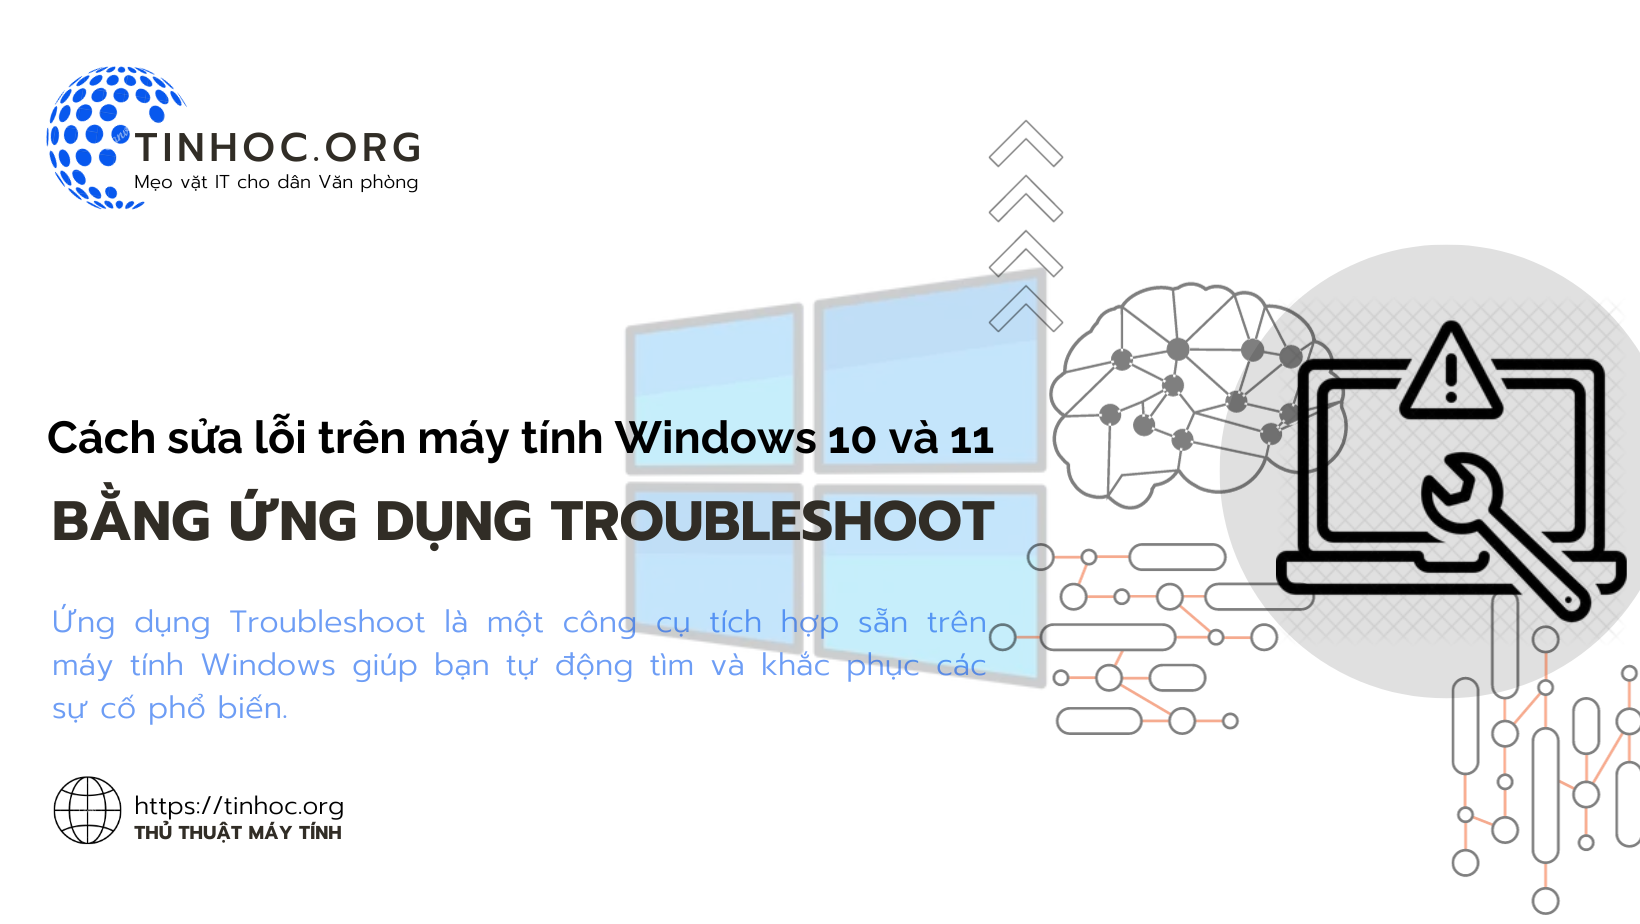 Cách sửa lỗi trên Windows bằng ứng dụng Troubleshoot